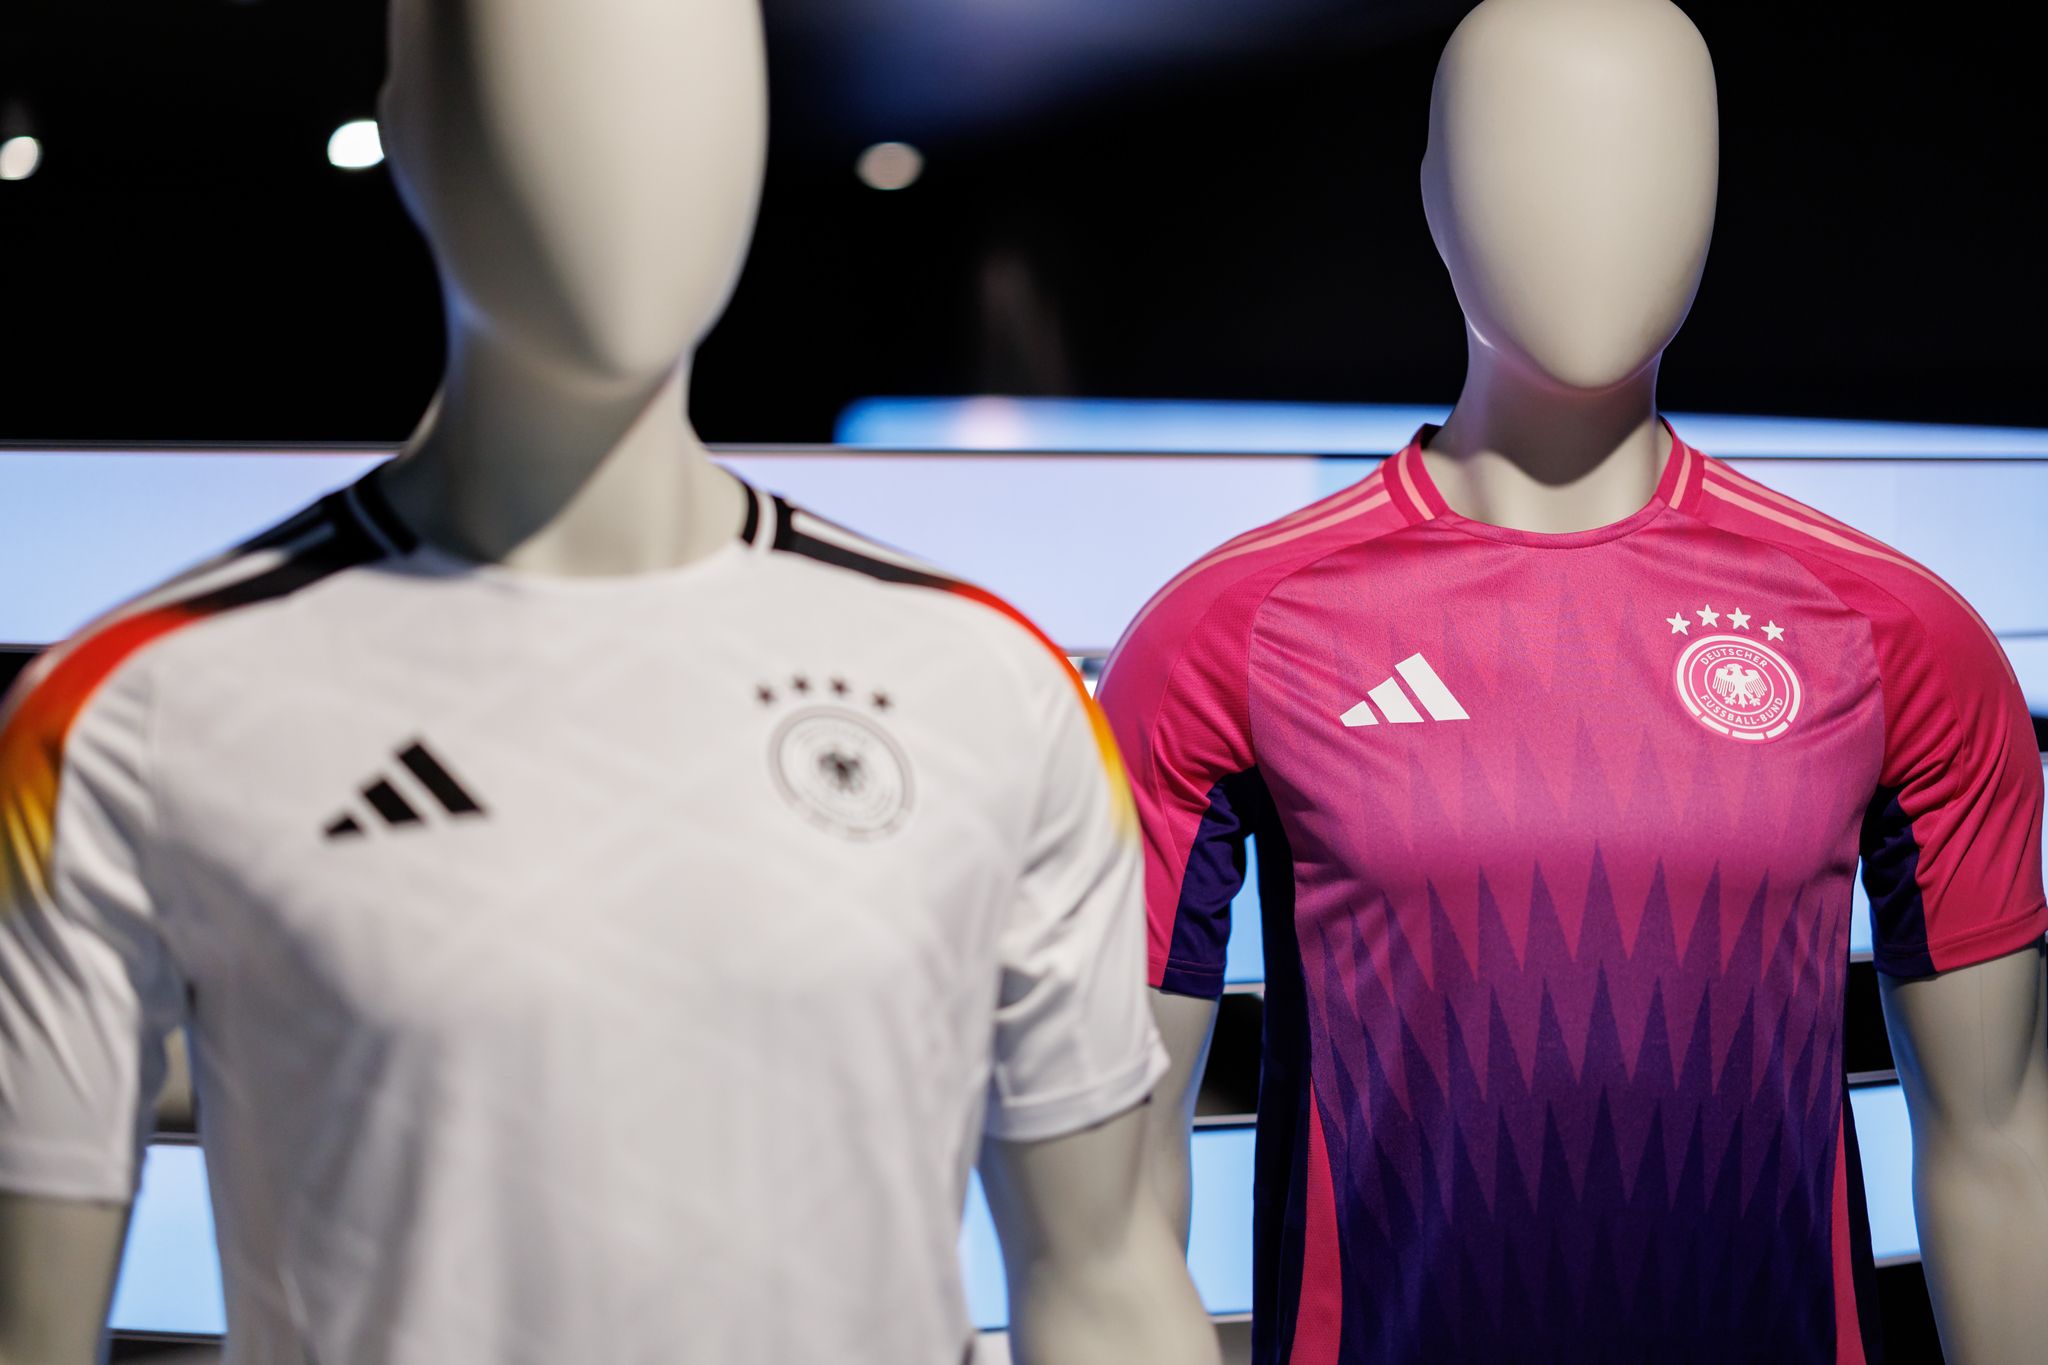 deutschland in pink - im sport lange zeit «ein no-go»